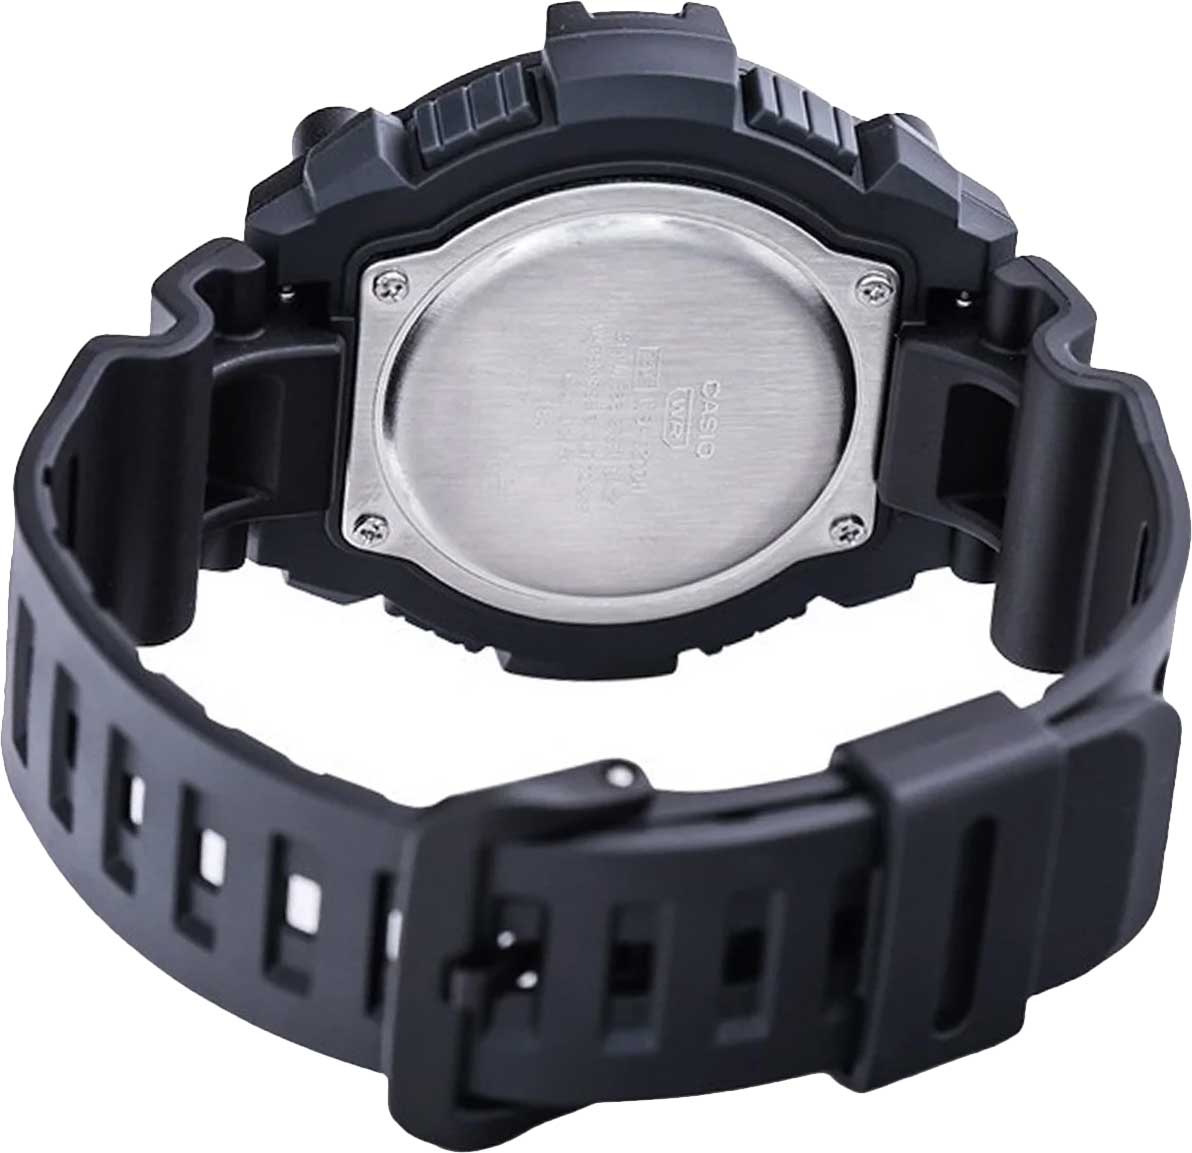 Наручные часы Casio Collection интернет-магазине по купить фото, лучшей WS-1300H-1AVEF AllTime.ru описание цене, характеристики, в —